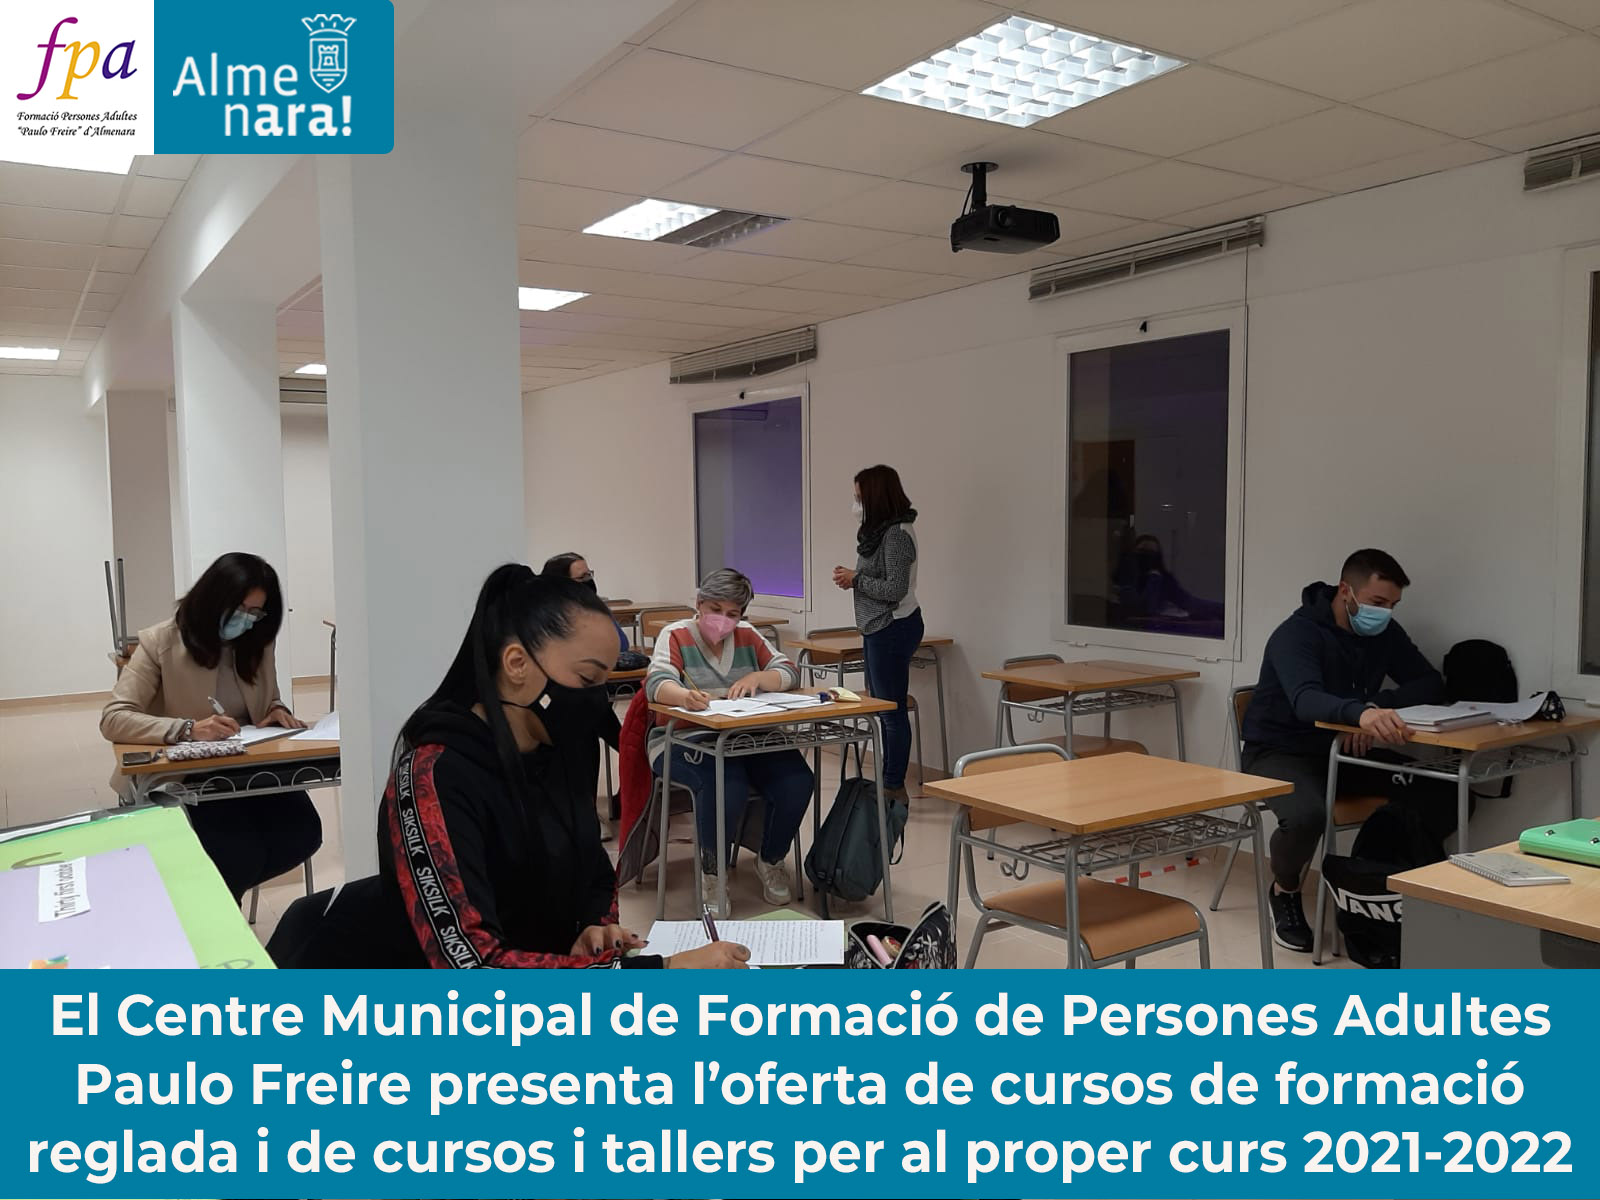 El Centre de Formació de Persones Adultes Paulo Freire de Almenara abre la matrícula para el próximo curso